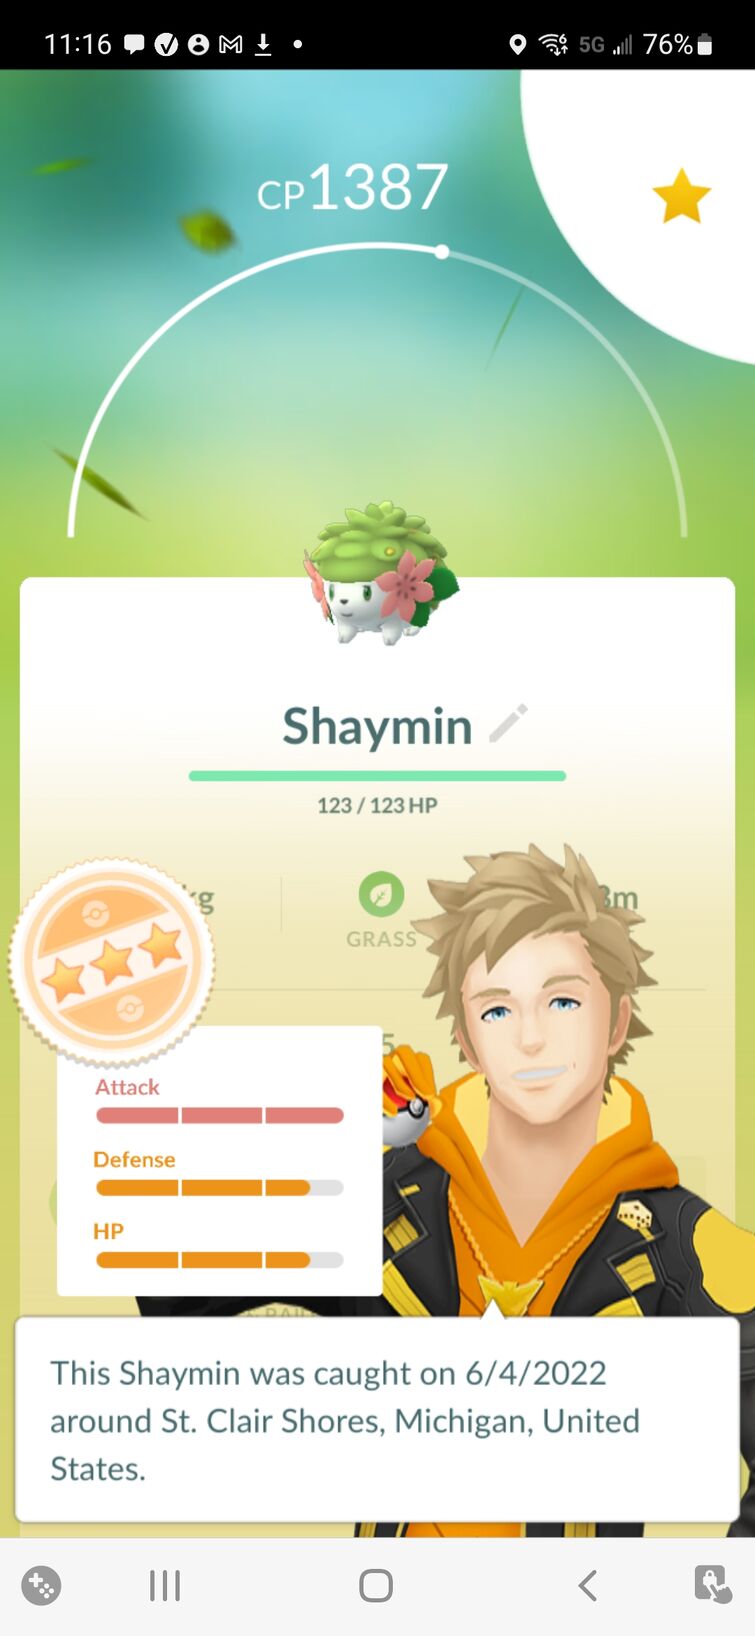 Pokémon GO Fest 2022 Will Feature Mythical Shaymin